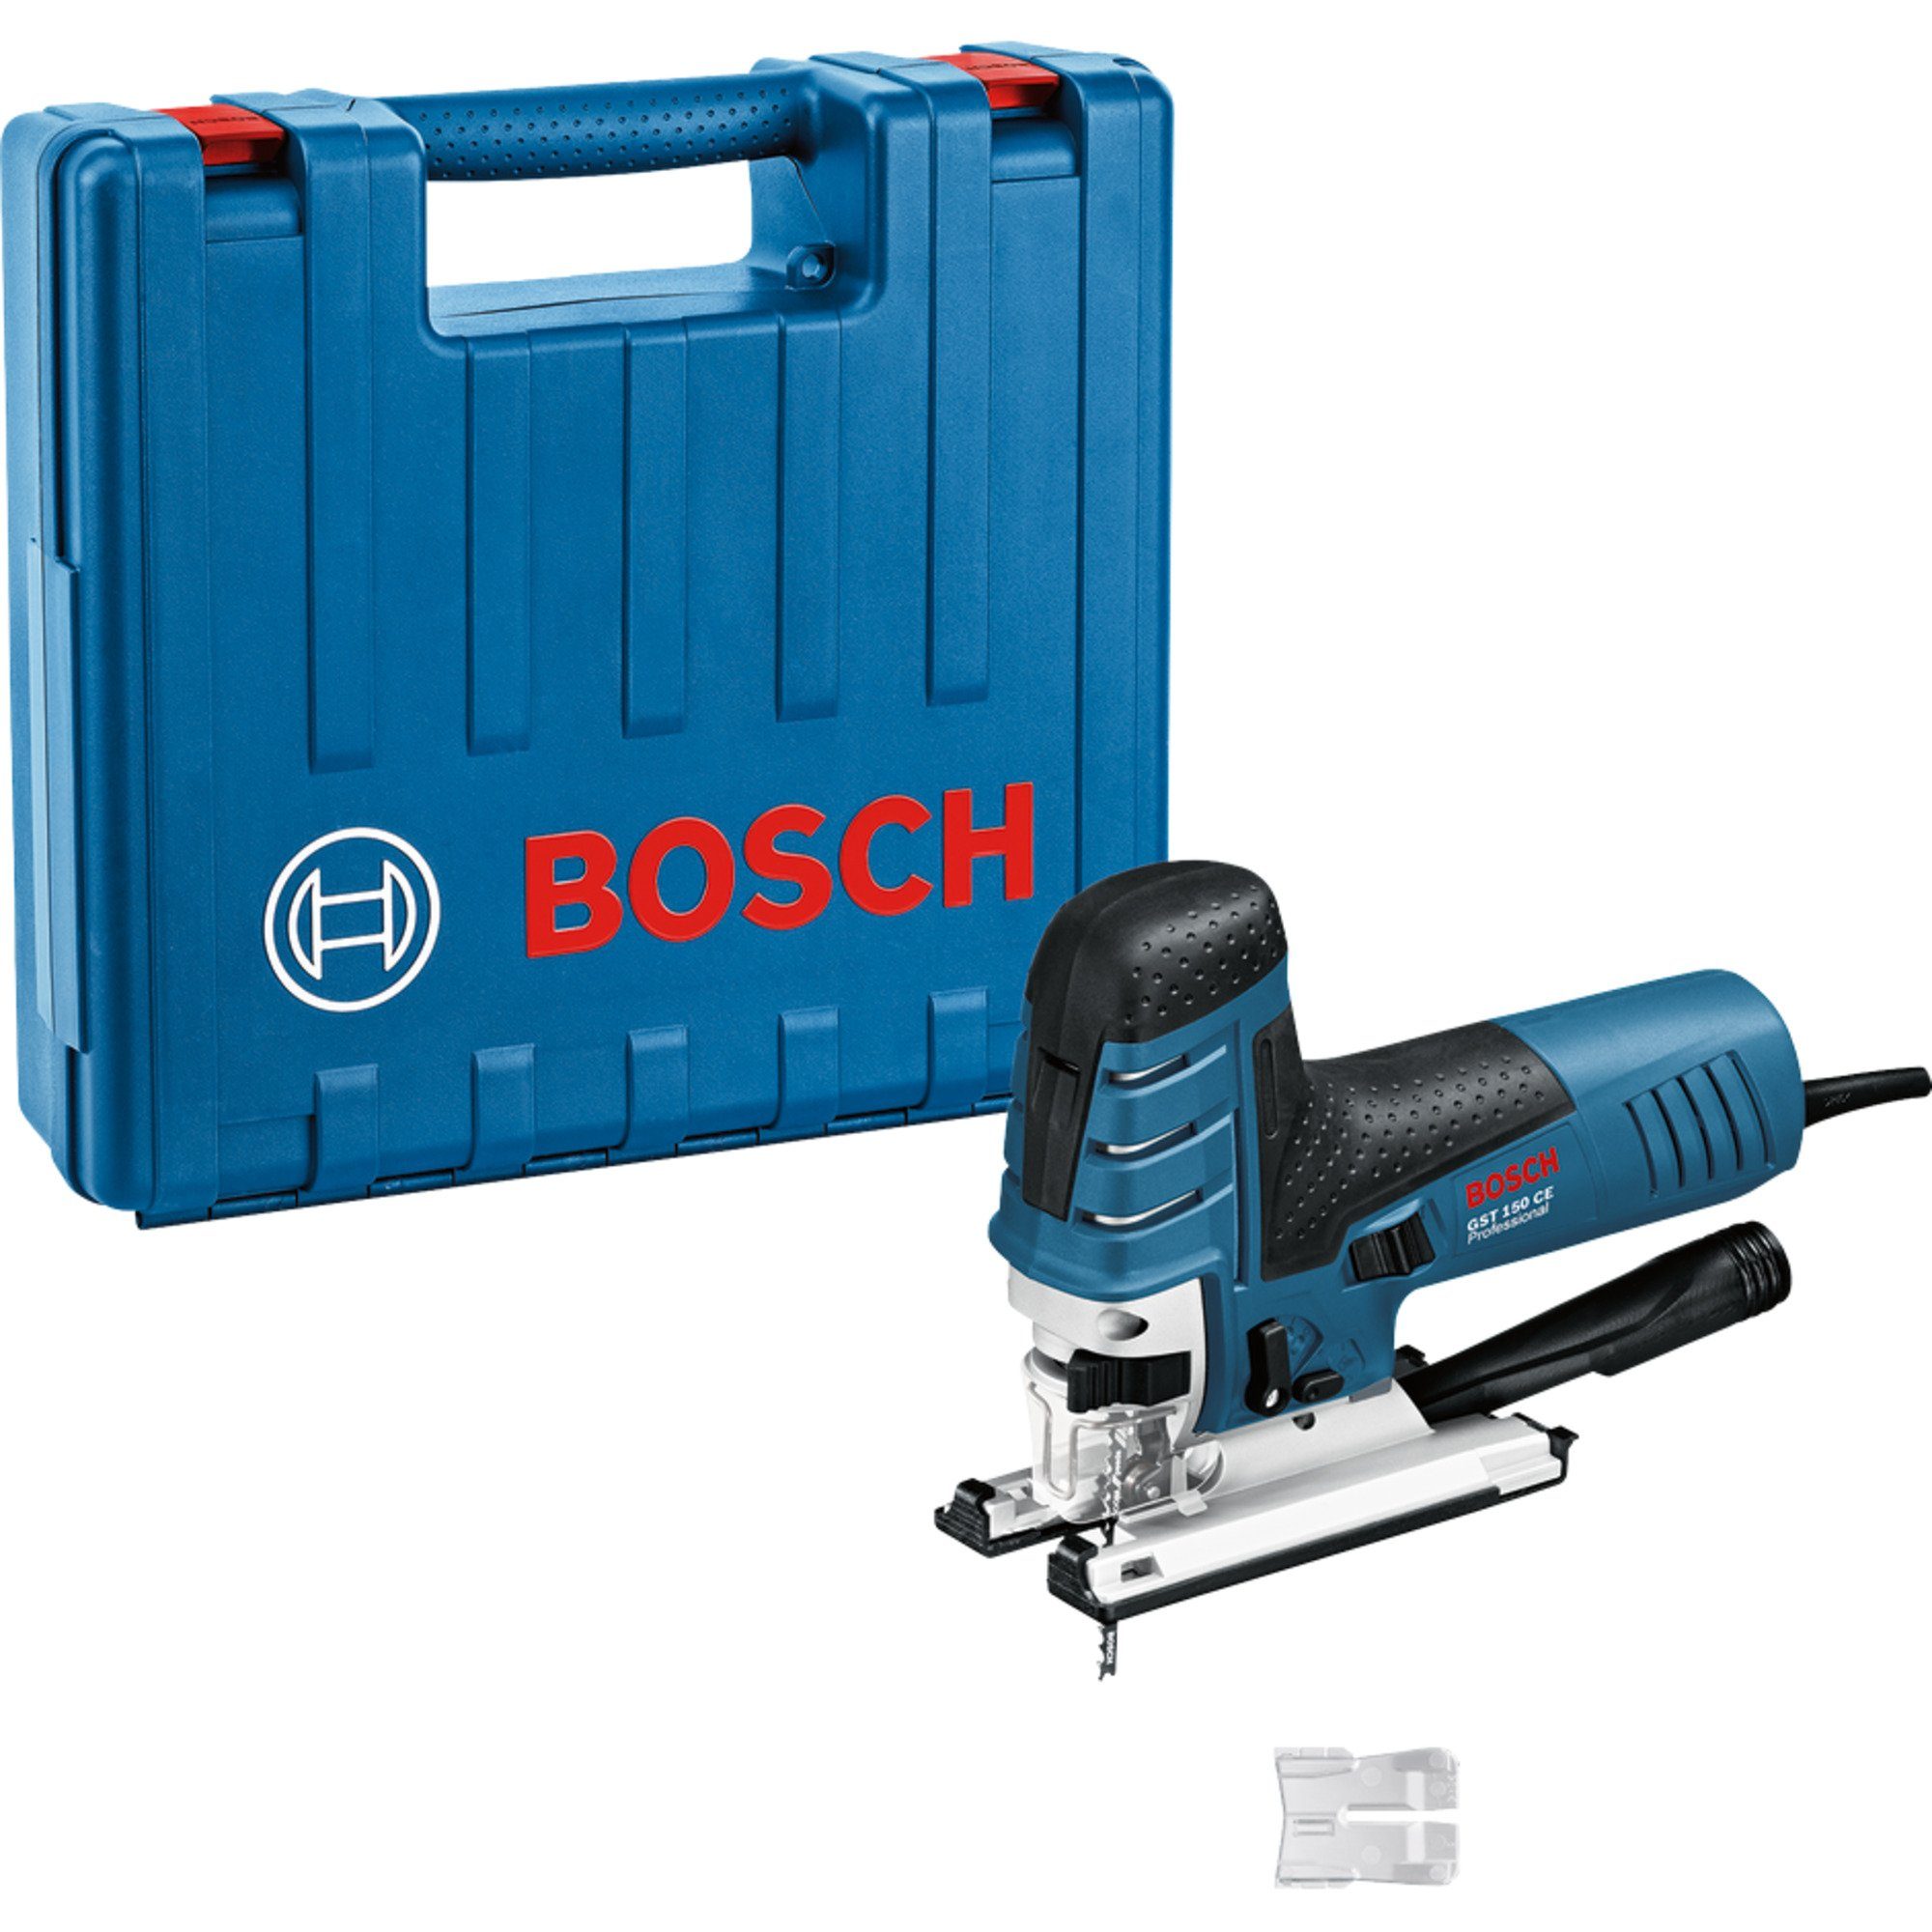 BOSCH Stichsäge Bosch Stichsäge 150 CE Professional GST